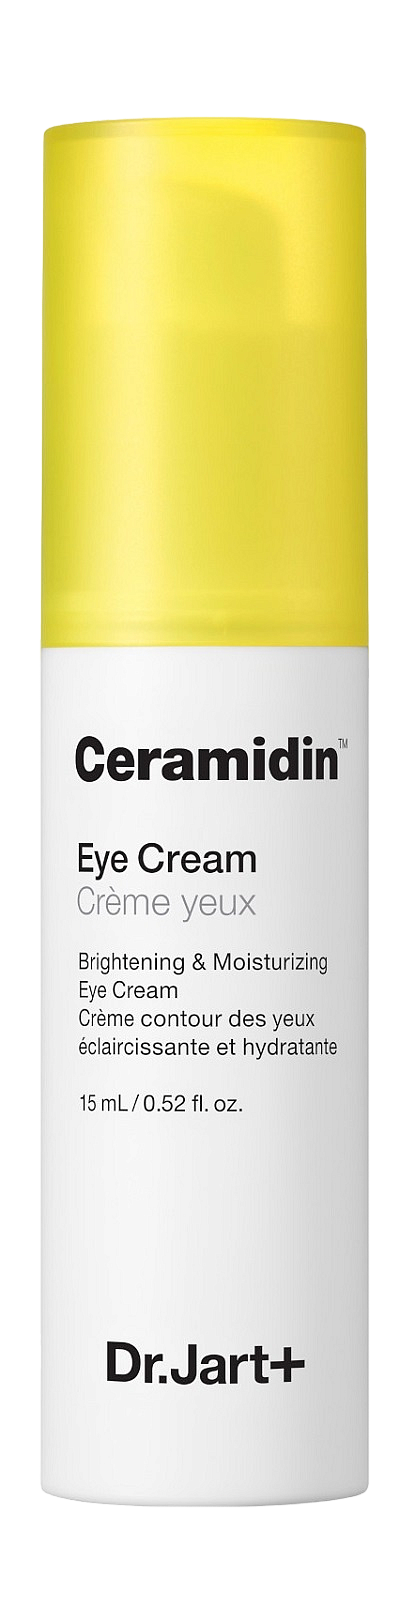 Крем для глаз увлажняющий и освежающий Ceramidin Eye